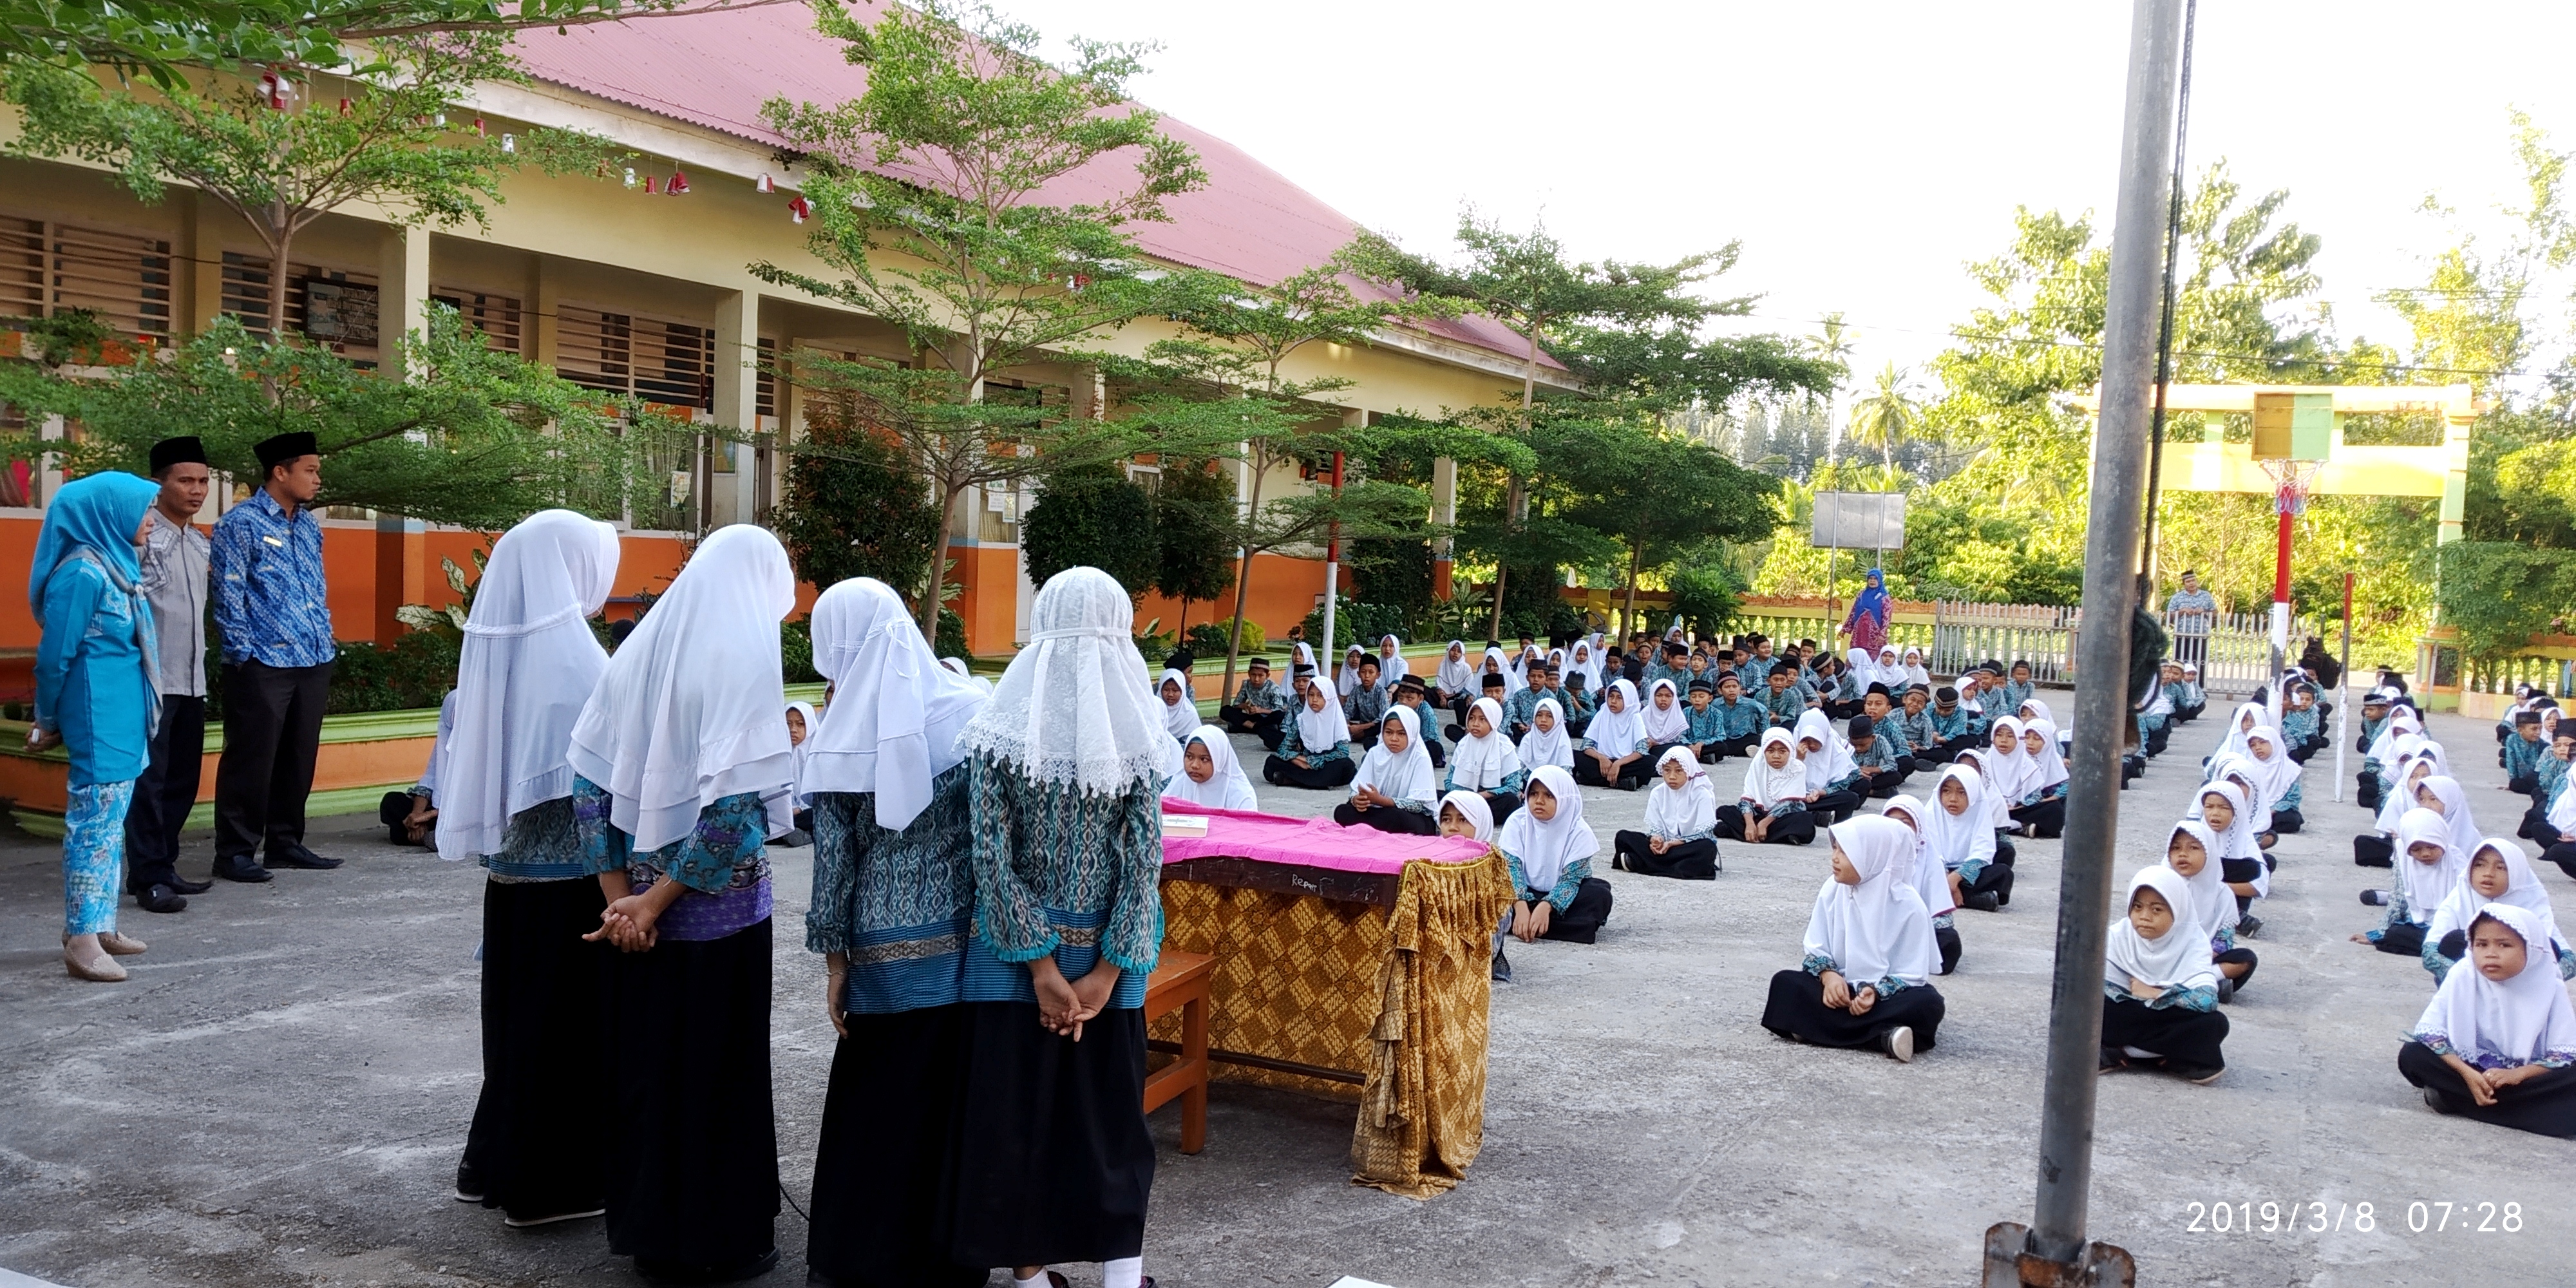 Murid SD Negeri 05 Pasar Baru Kecamatan Bayang Pessel ditempa dengan pendidikan agama pada setiap jumat